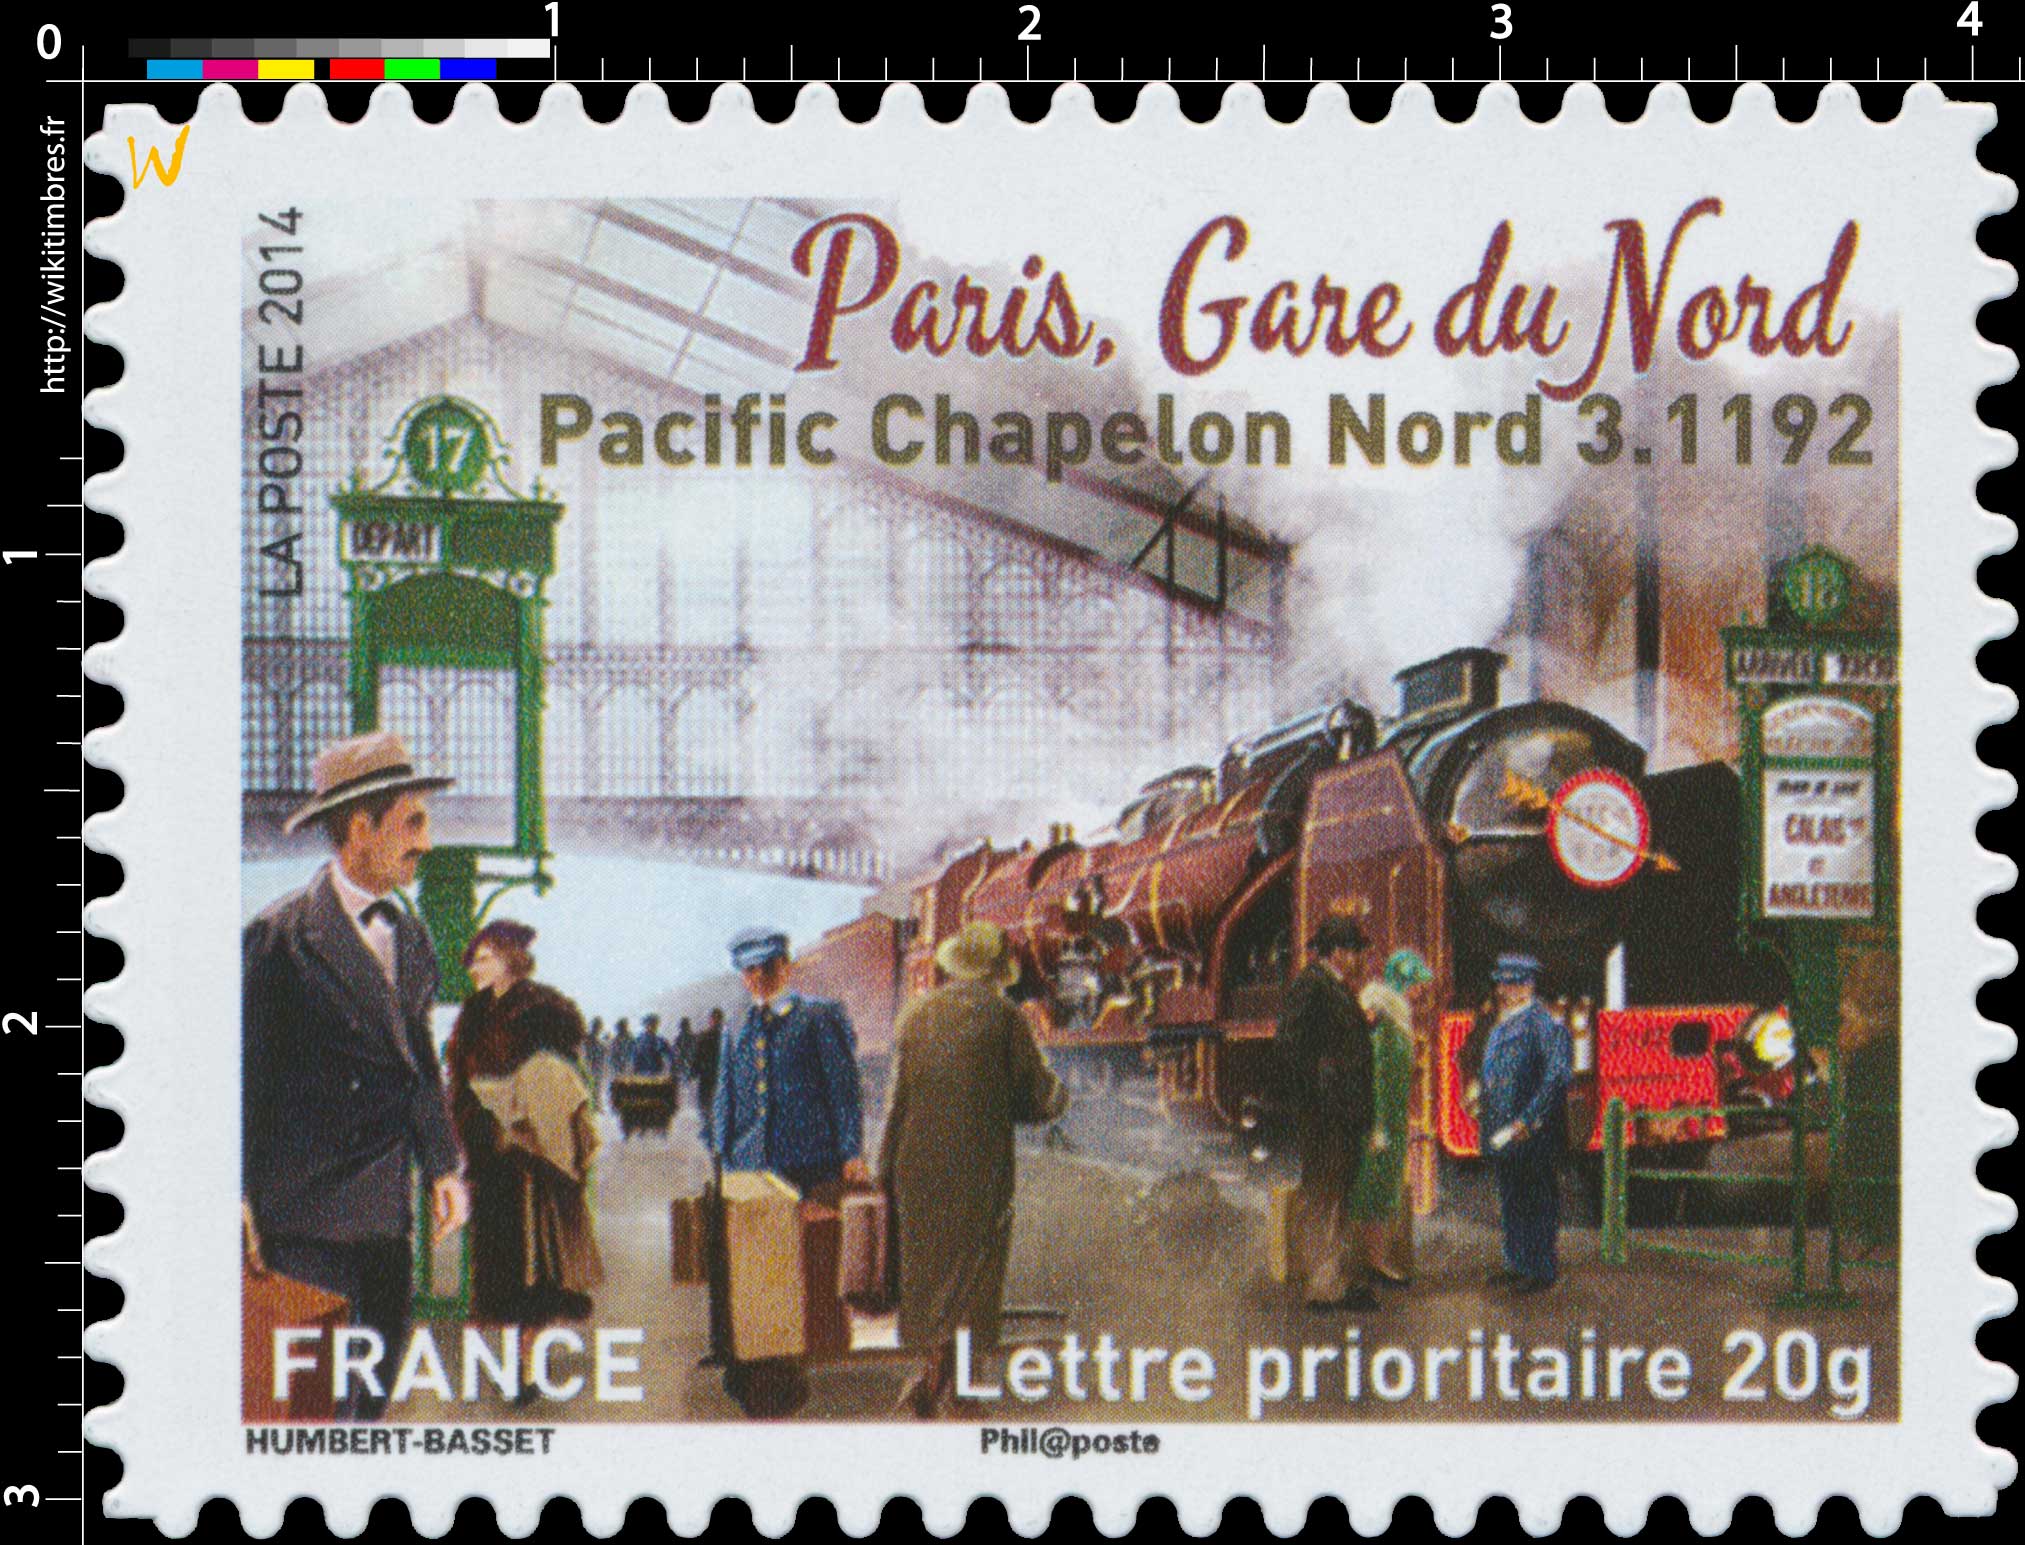 2014 Paris Gare du Nord Pacific Chapelon nord 3.1192